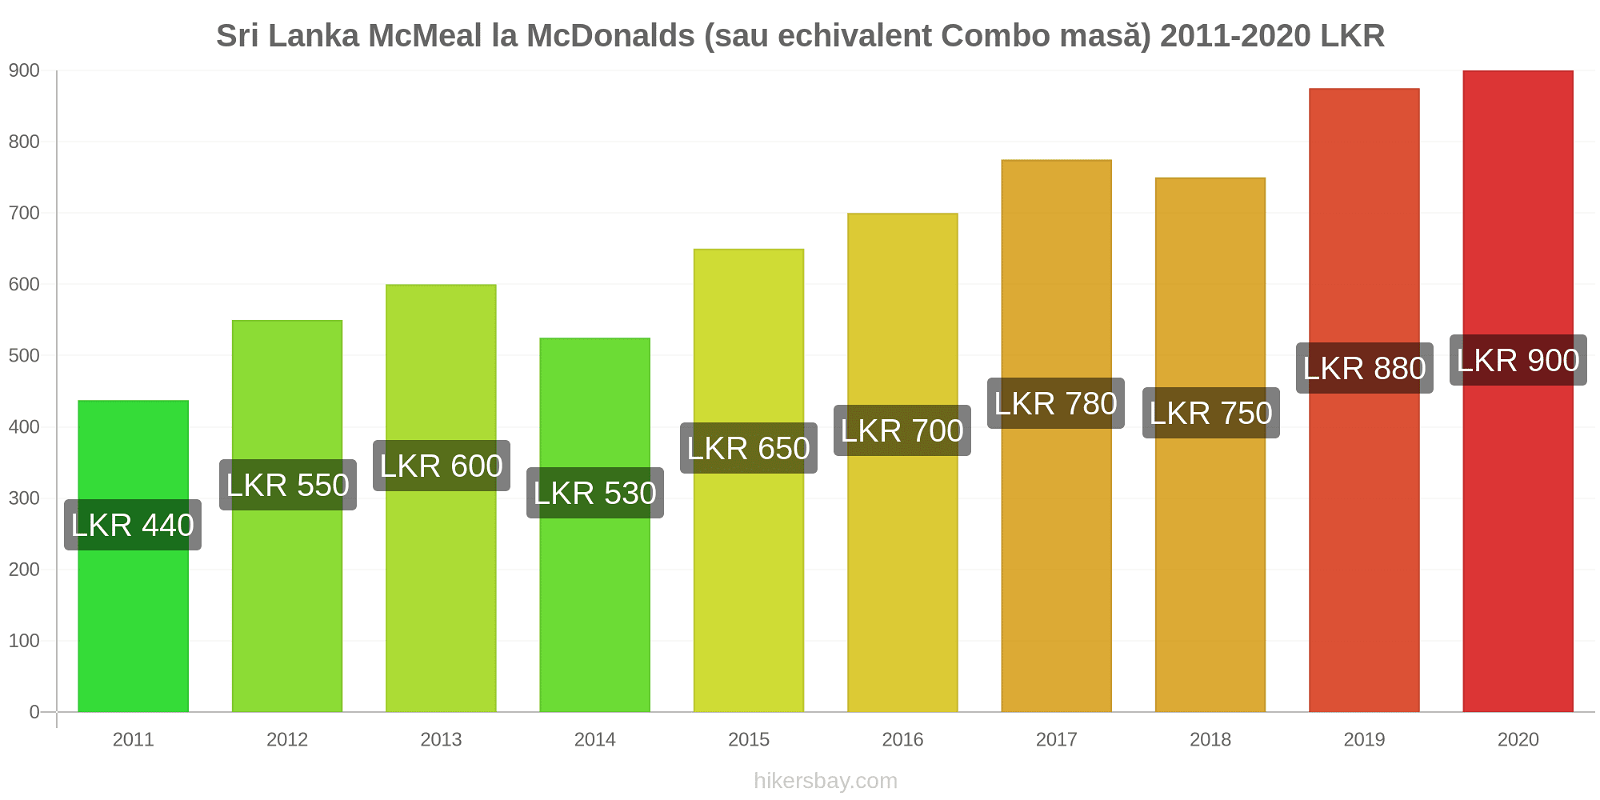 Sri Lanka modificări de preț McMeal la McDonalds (sau echivalent Combo masă) hikersbay.com